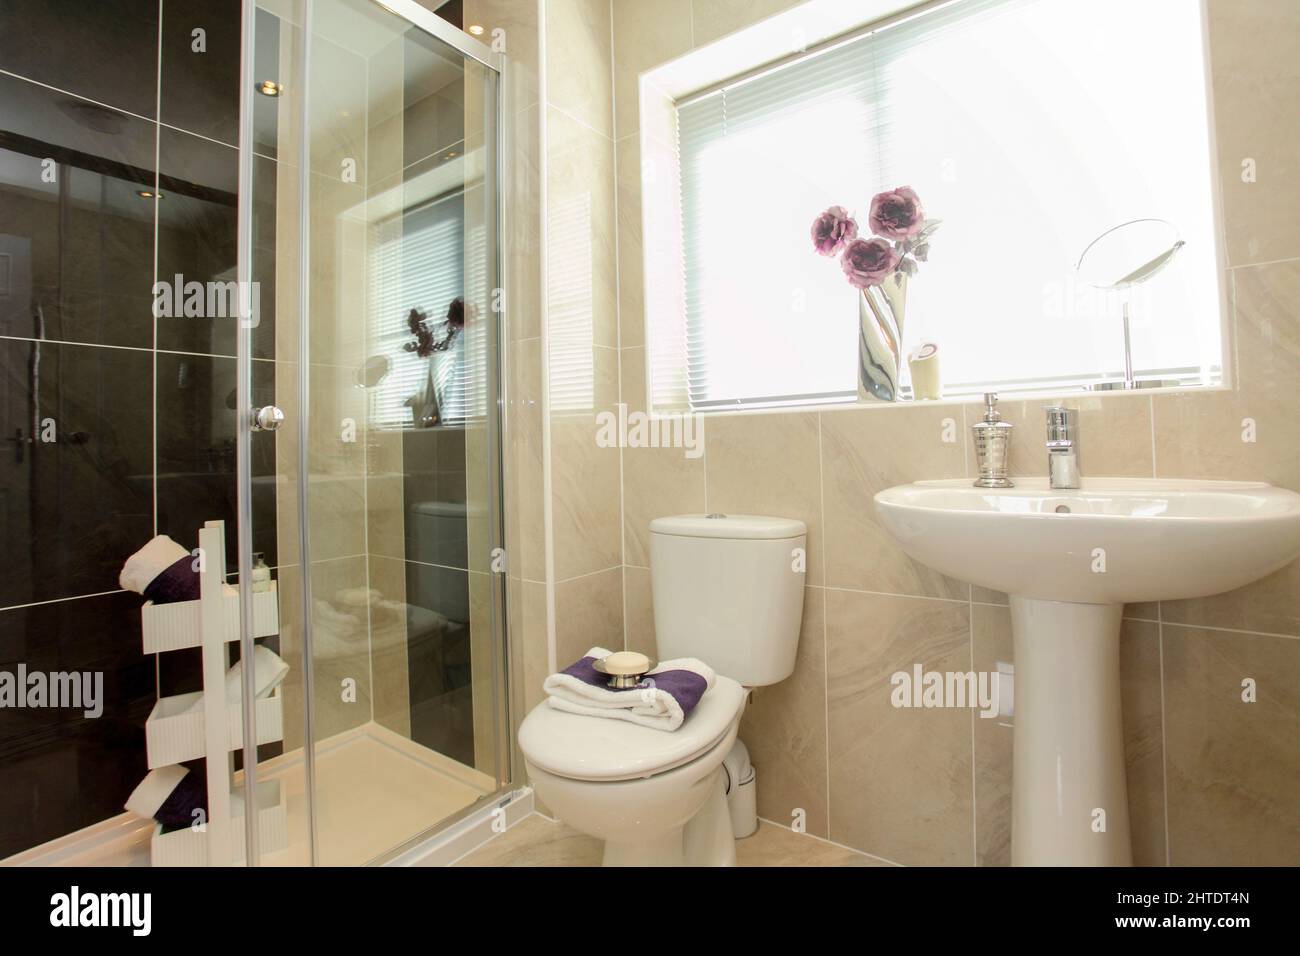 Moderno cuarto de baño en casa de nueva construcción, wc, ducha, lavabo, simple, mosaico, esquema de colores blanco gris beige. Foto de stock